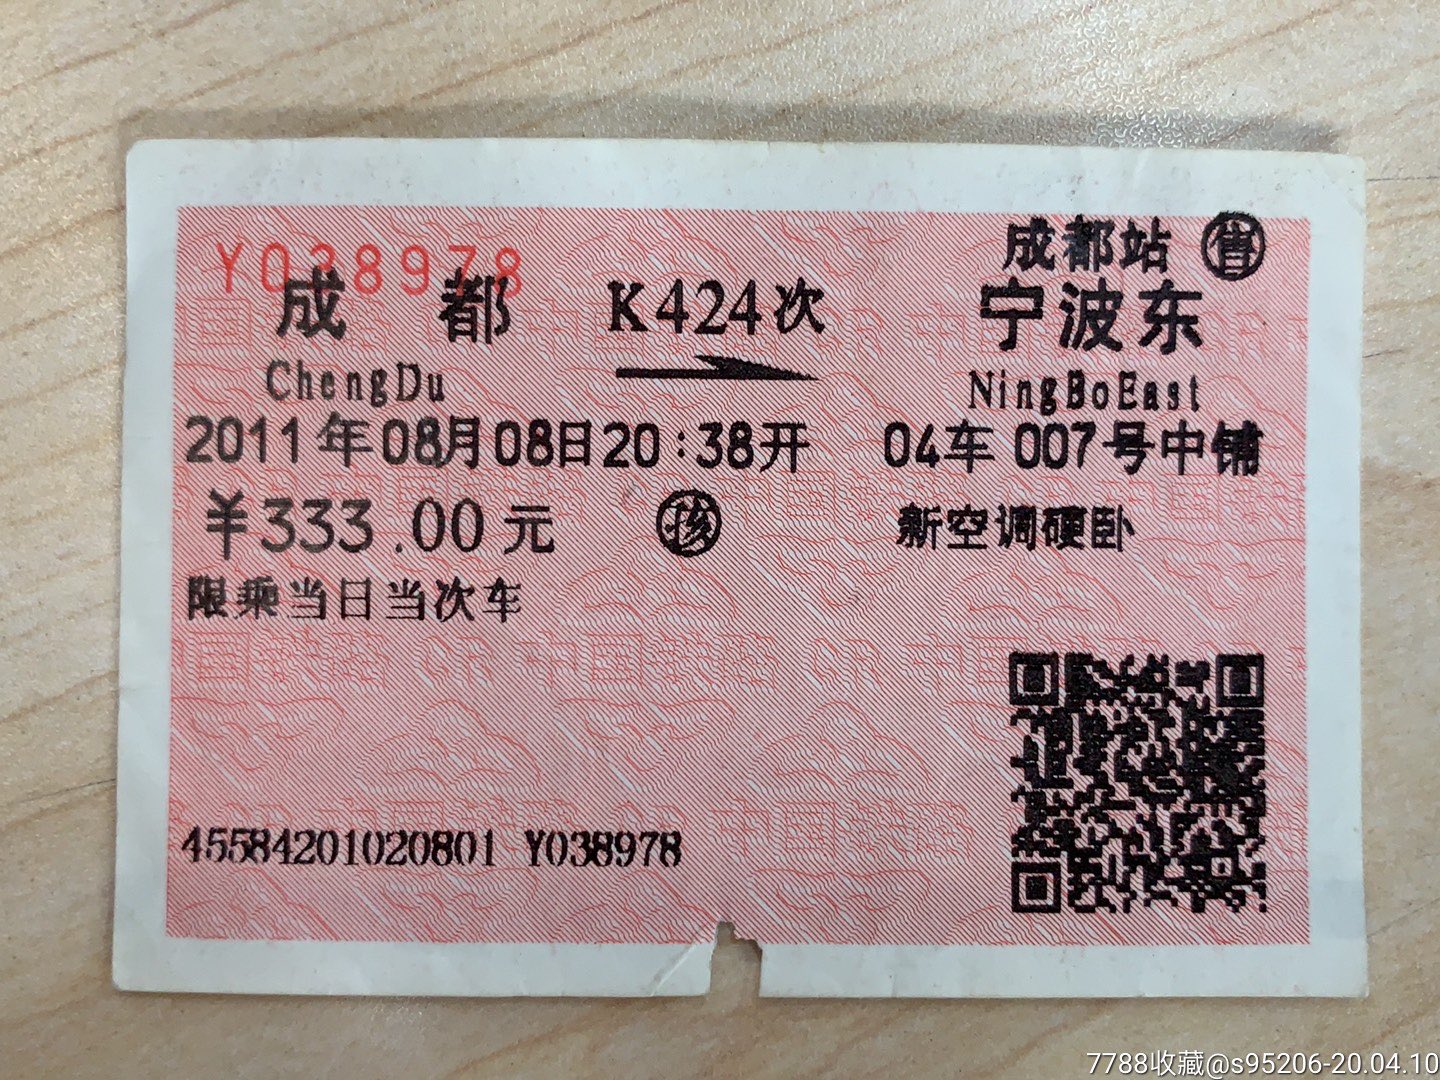 44 硬卧下 98 苏州到杭州汽车票和火车票分别是多少钱 苏州南站到杭州